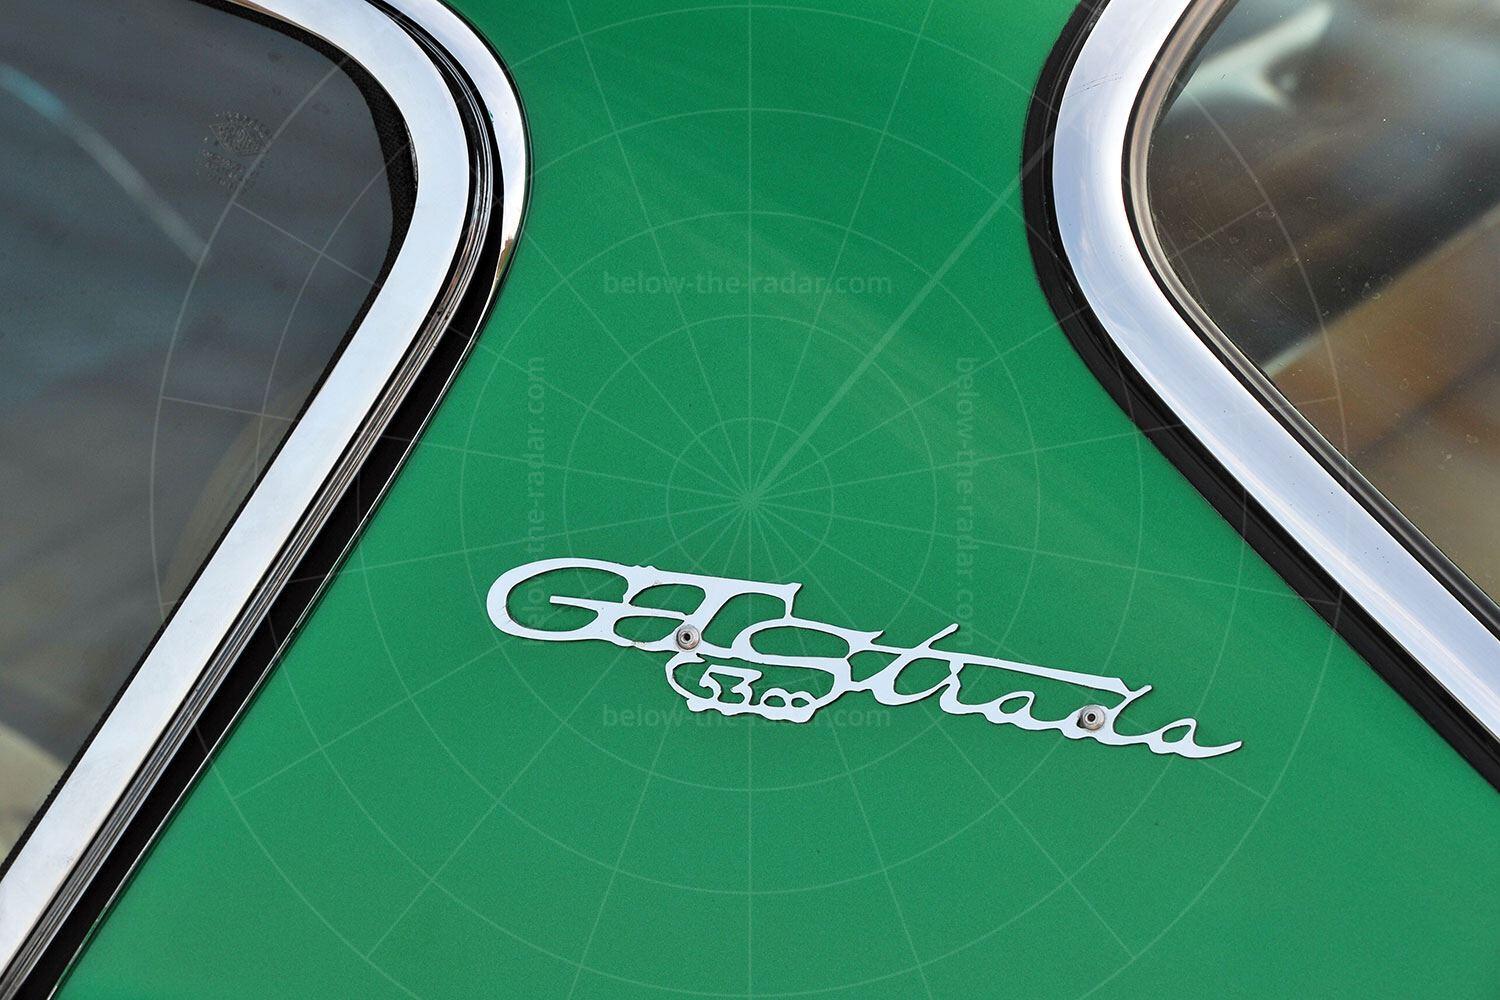 Bizzarrini GT Strada Pic: RM Sotheby's | Bizzarrini GT Strada badge